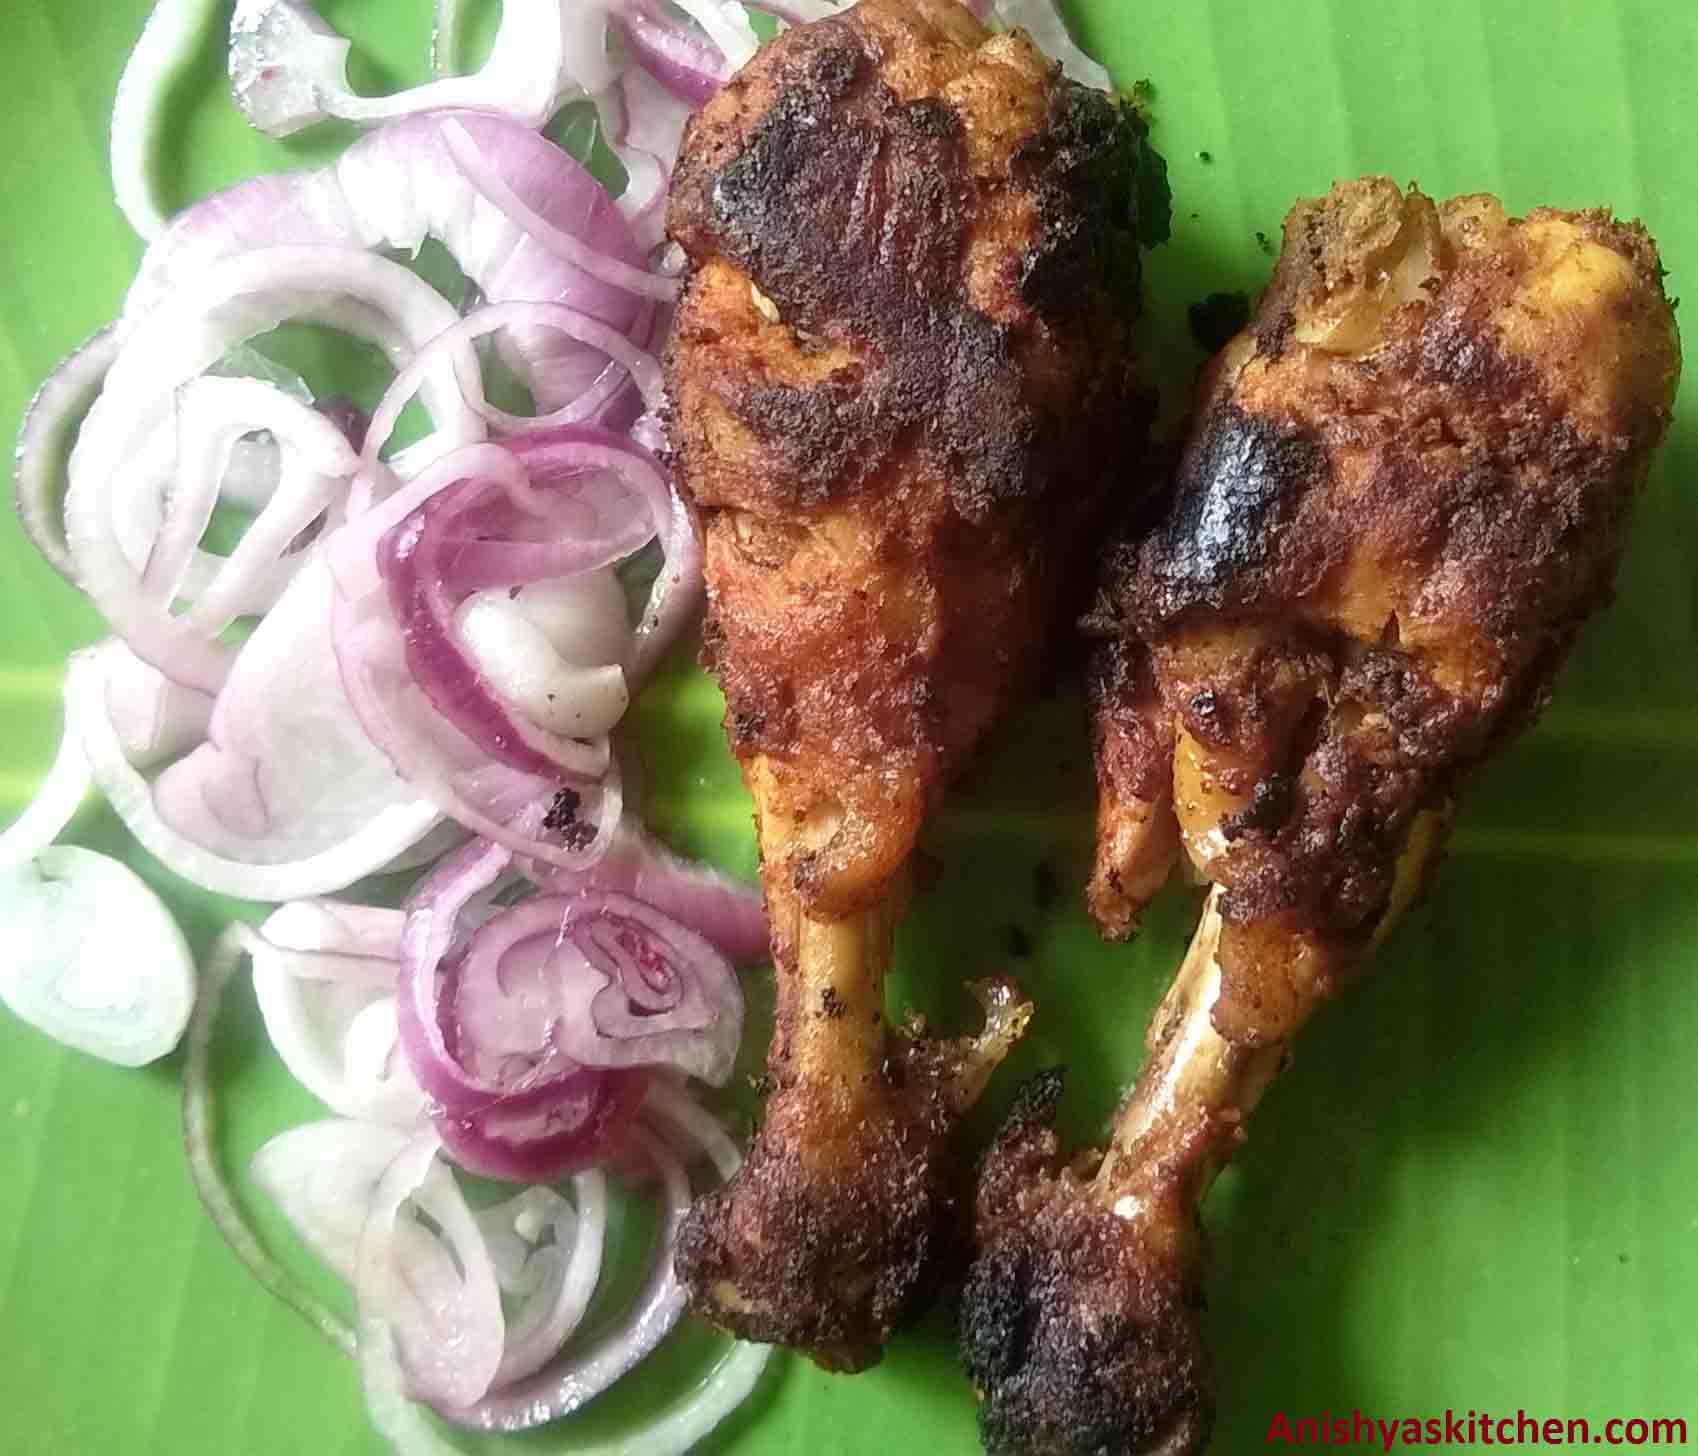 Kozhikaalu Varuthathu - Chicken leg fry - Chicken drumstick